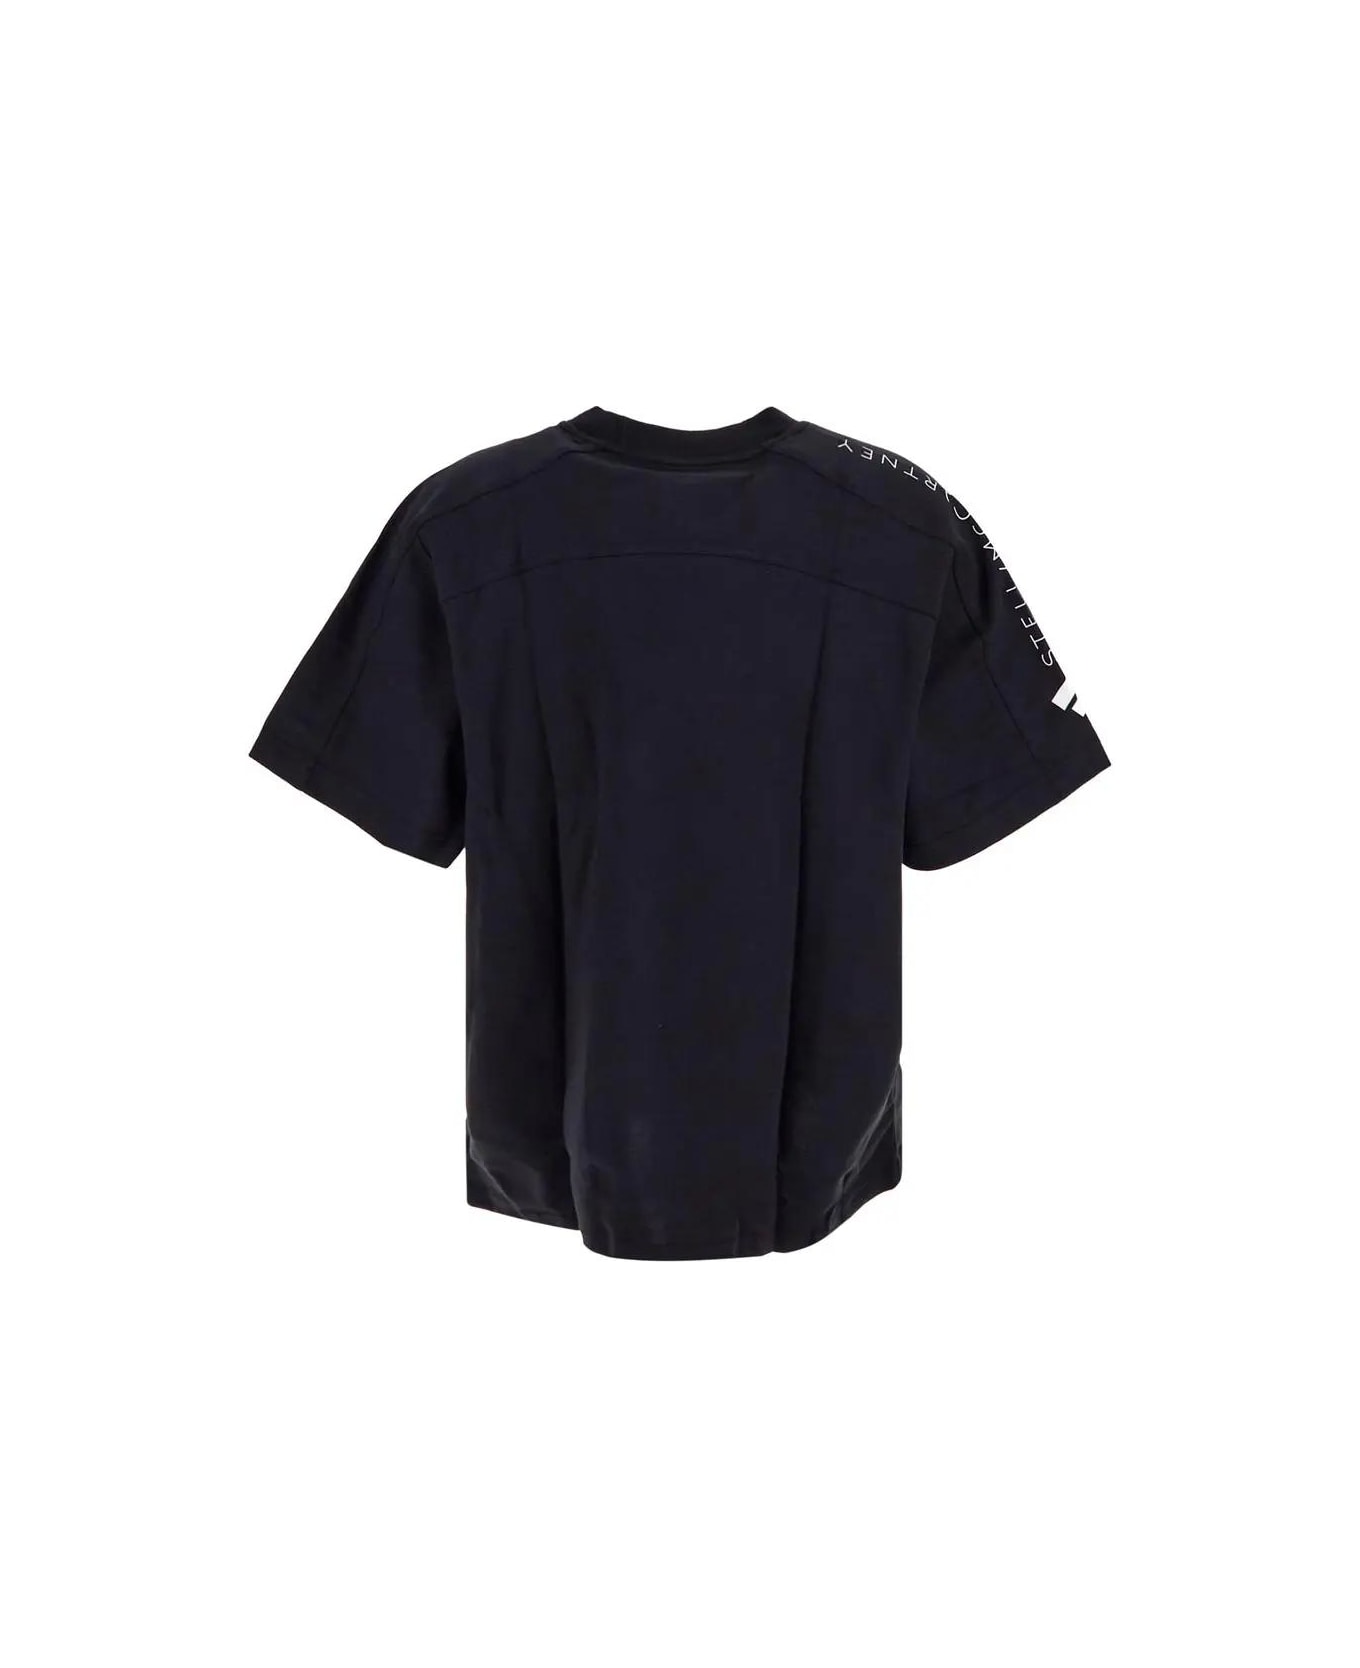 Adidas by Stella McCartney Logo T-shirt Tシャツ